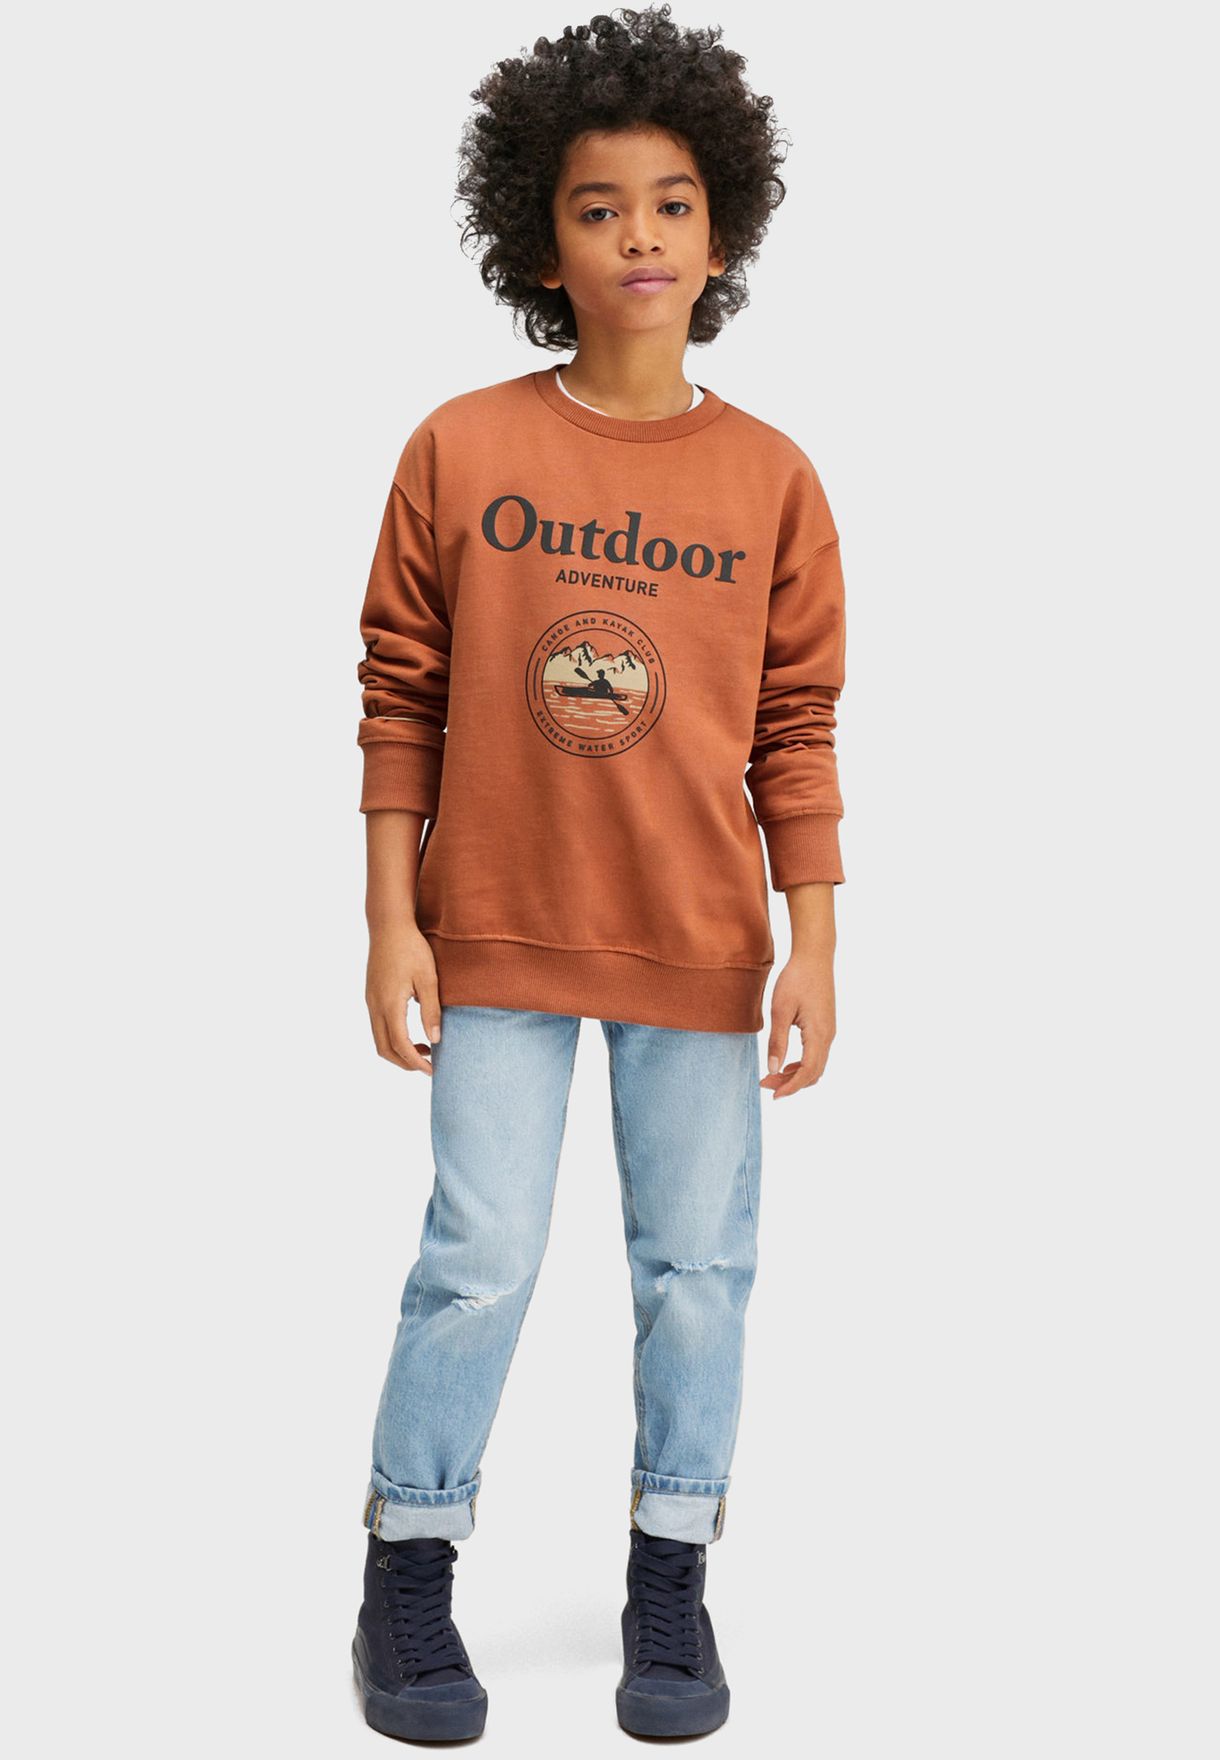 Kids Outdoor Adventure Sweatshirt